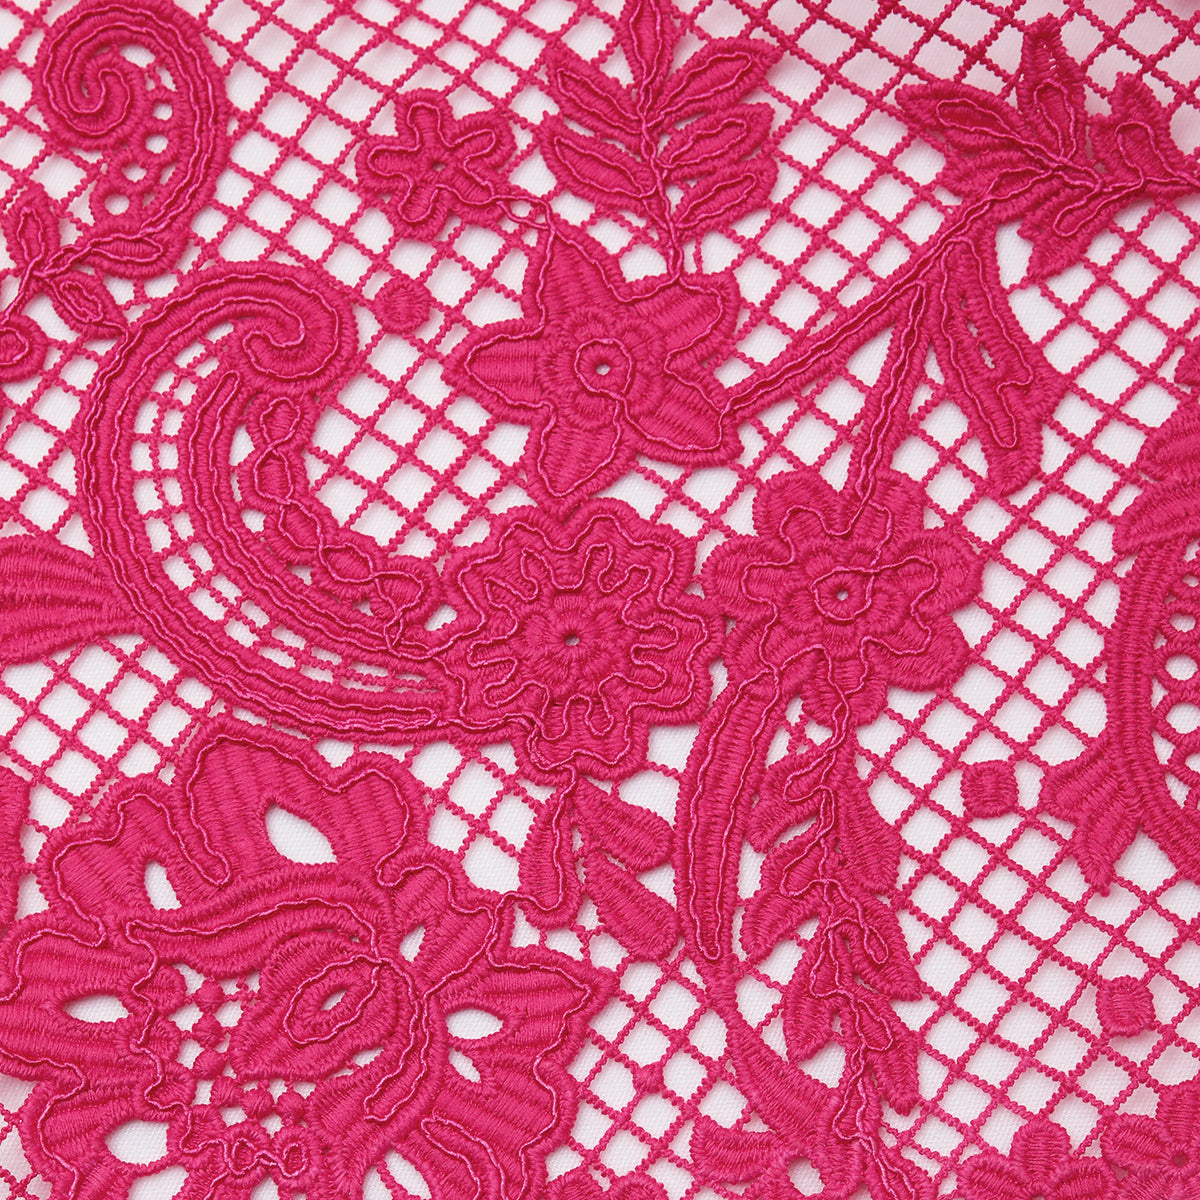 Pink Lace Maxi Dress